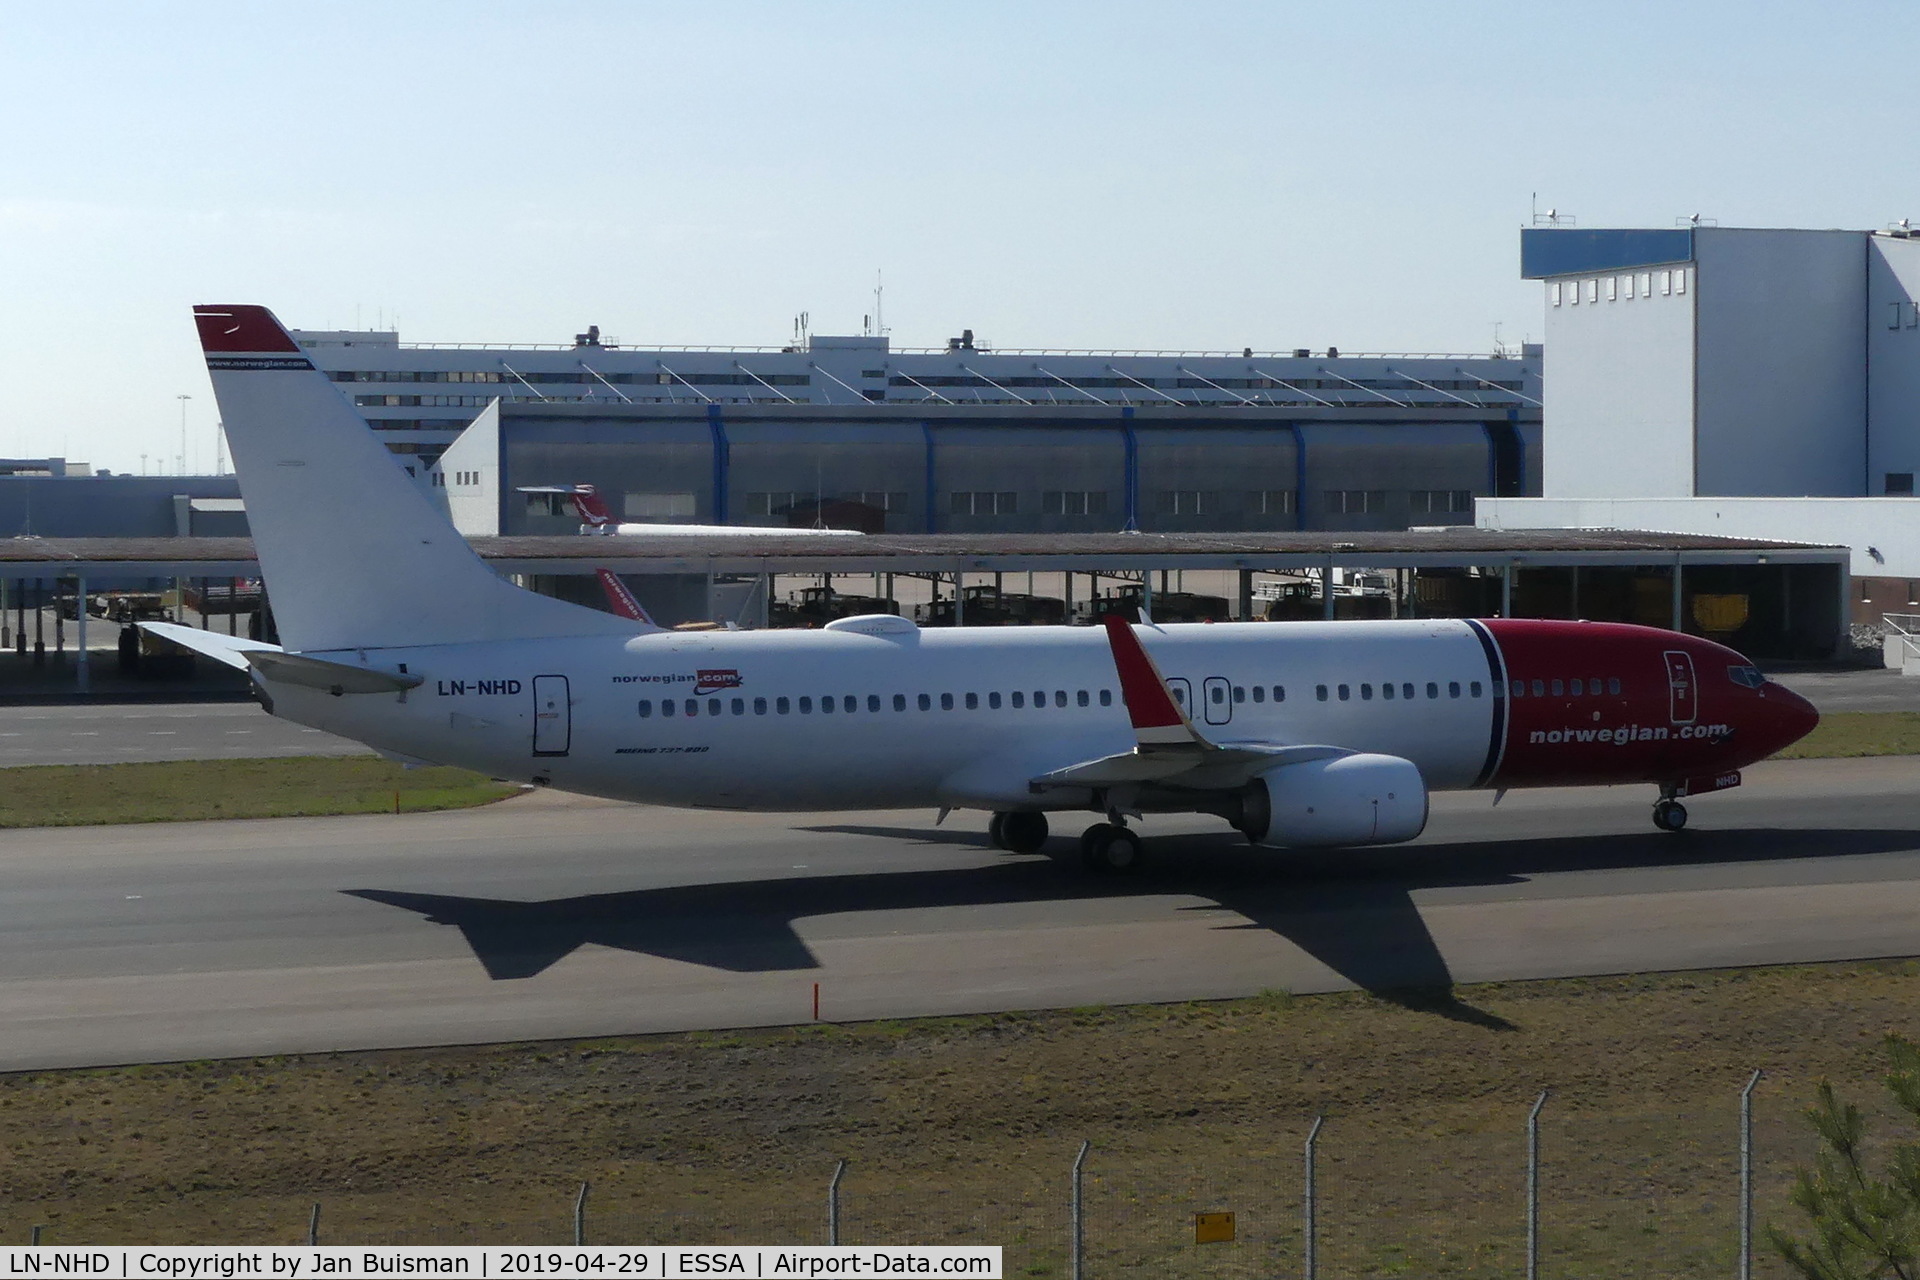 LN-NHD, 2015 Boeing 737-8JP C/N 41131, Norwegian